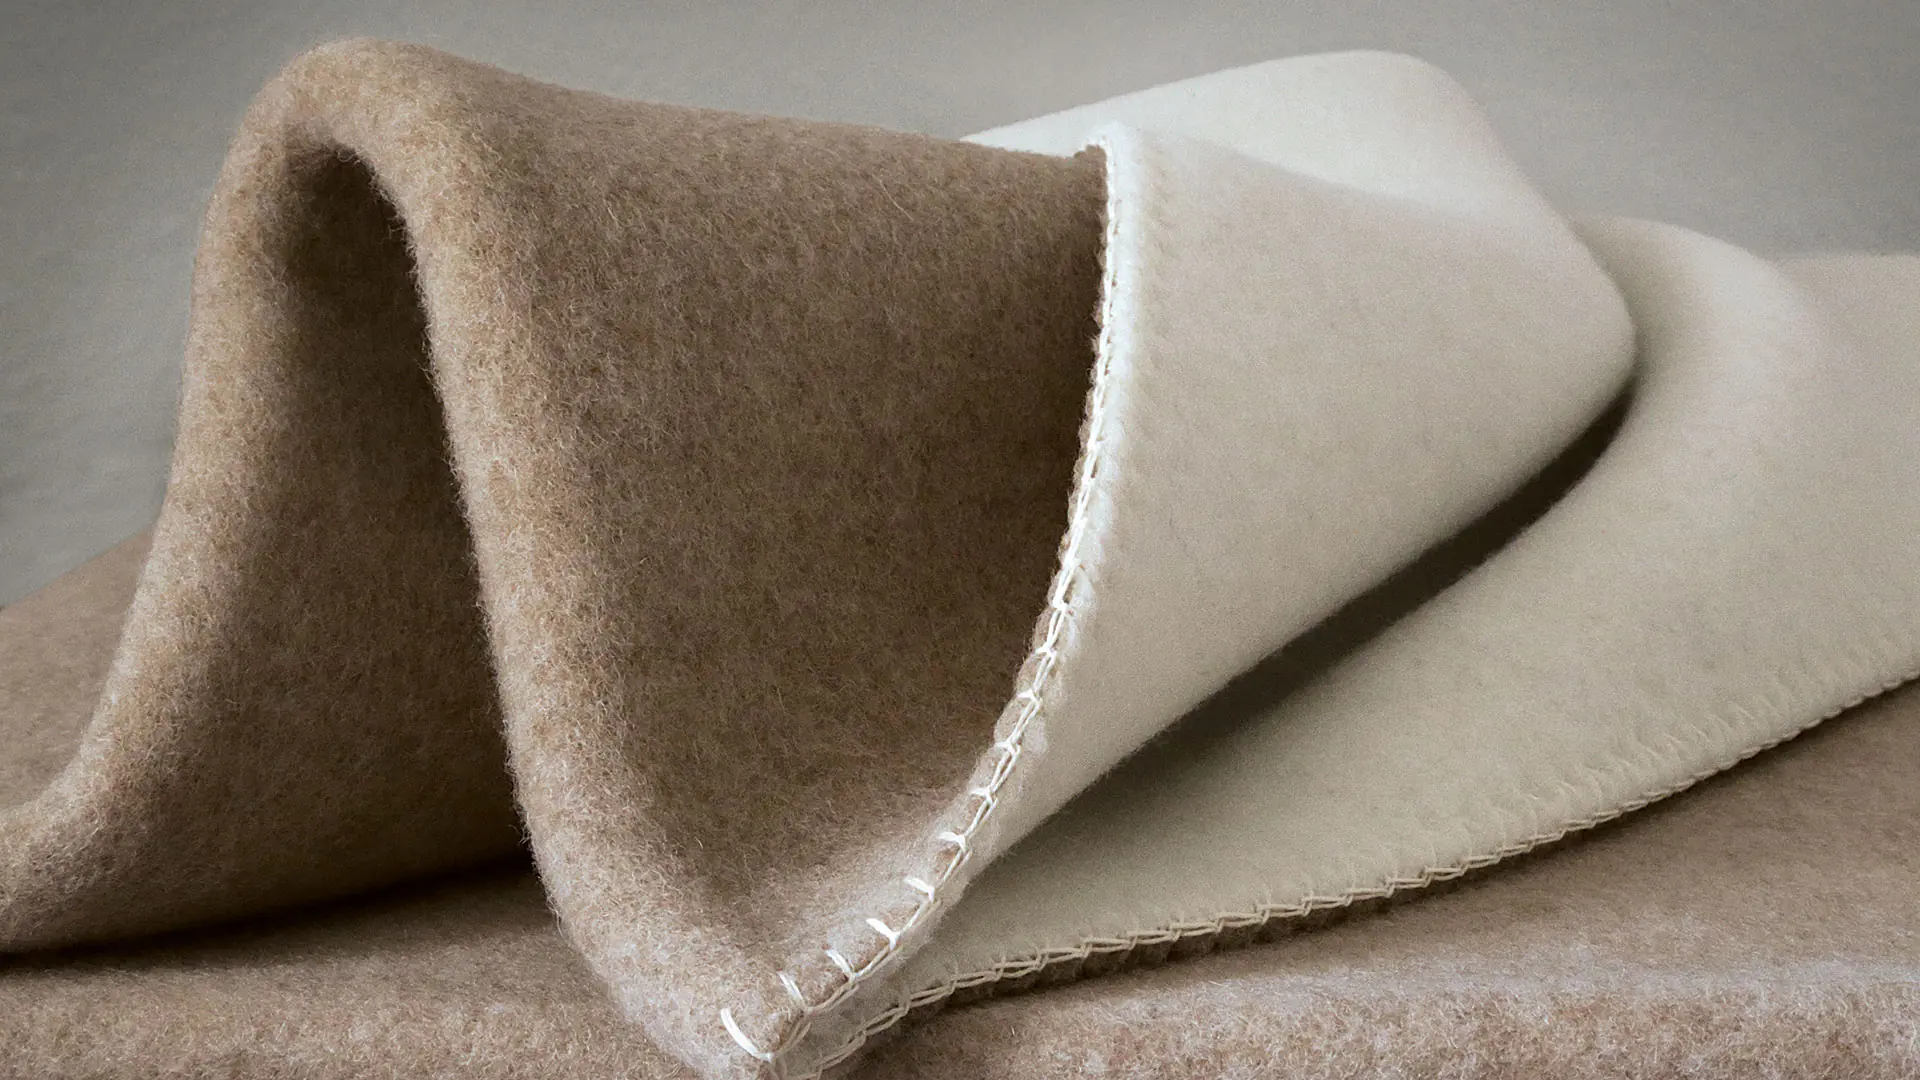 Huiselijke deken van merino schapenwol in de kleurstelling beige/wit